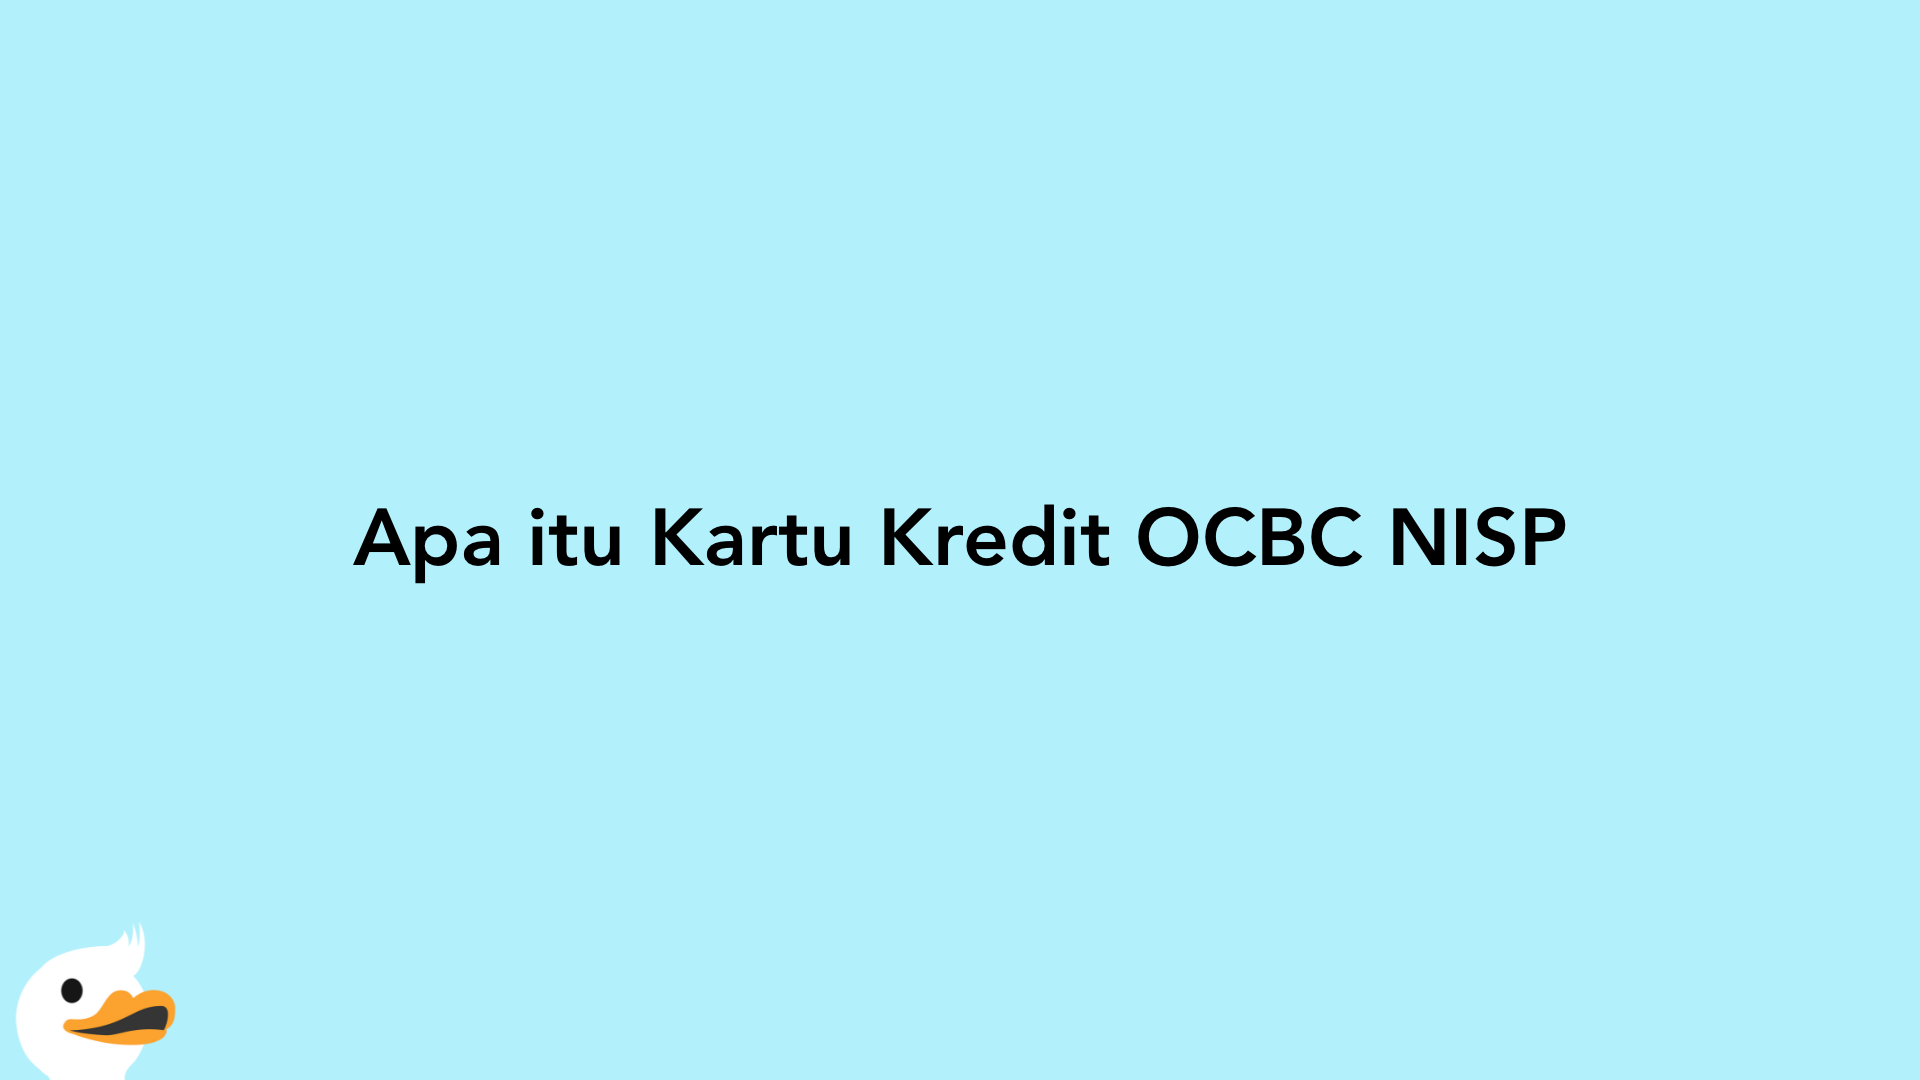 Apa itu Kartu Kredit OCBC NISP